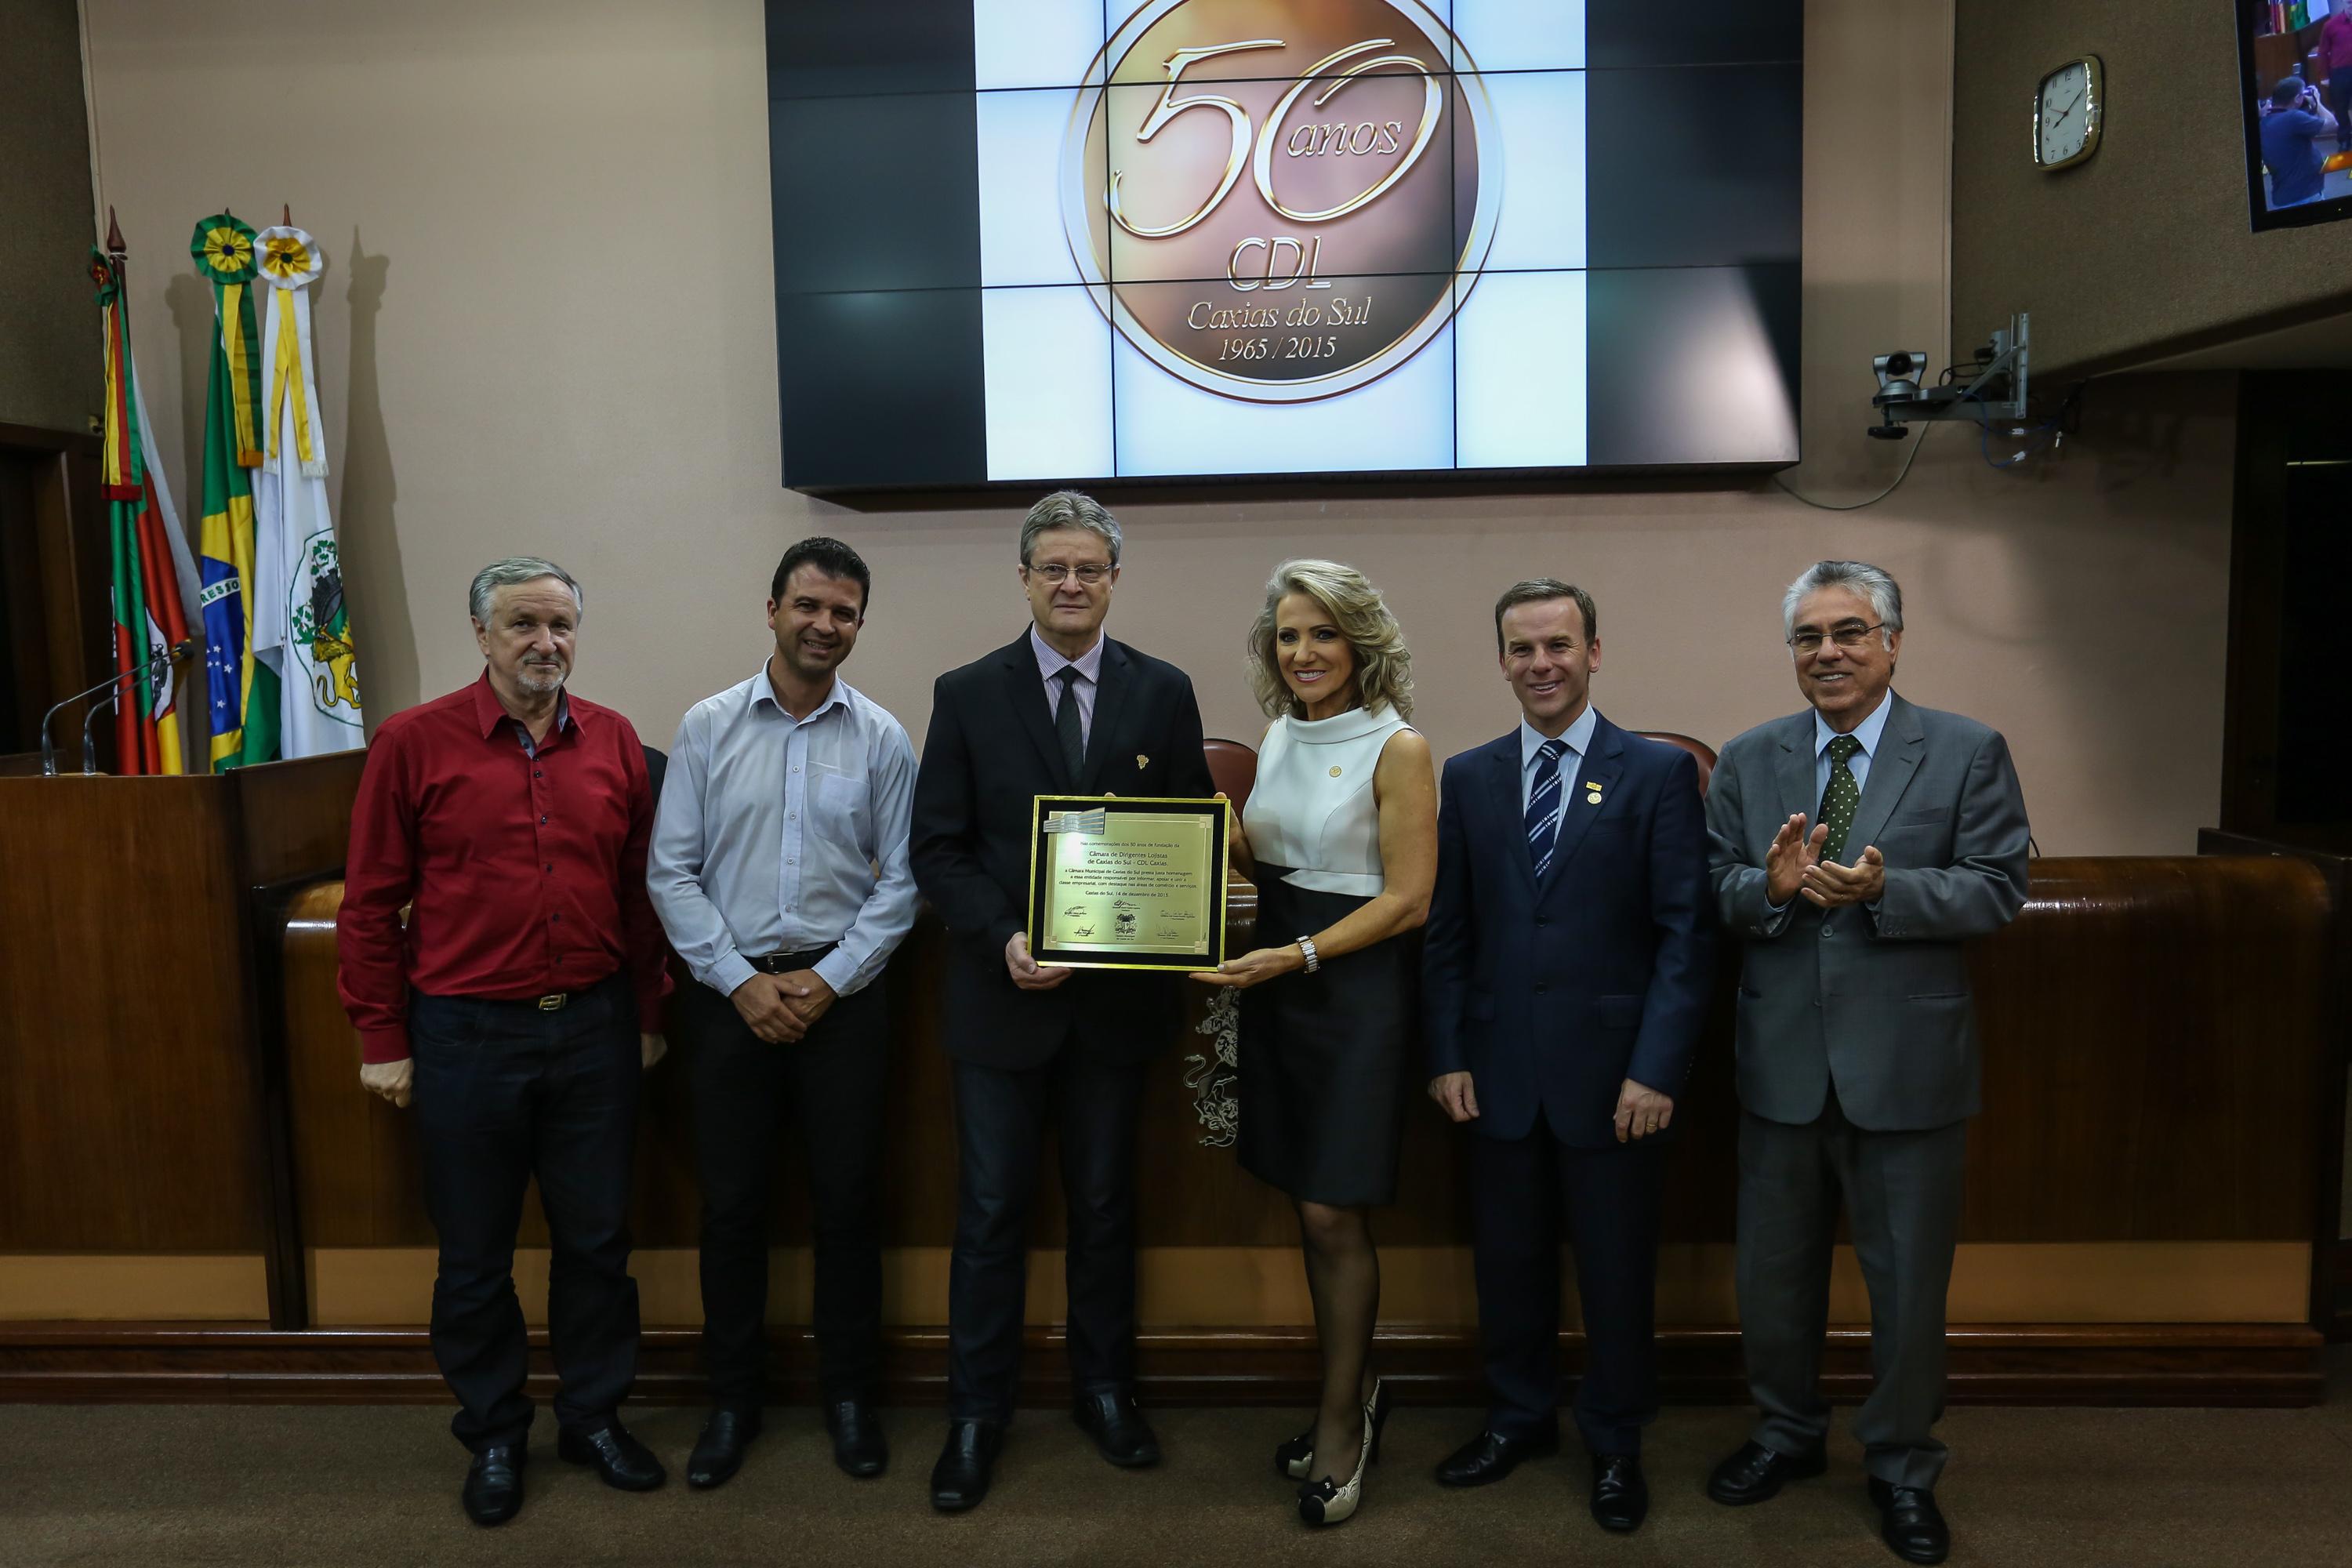 Câmara celebra o trabalho da CDL em prol de Caxias do Sul